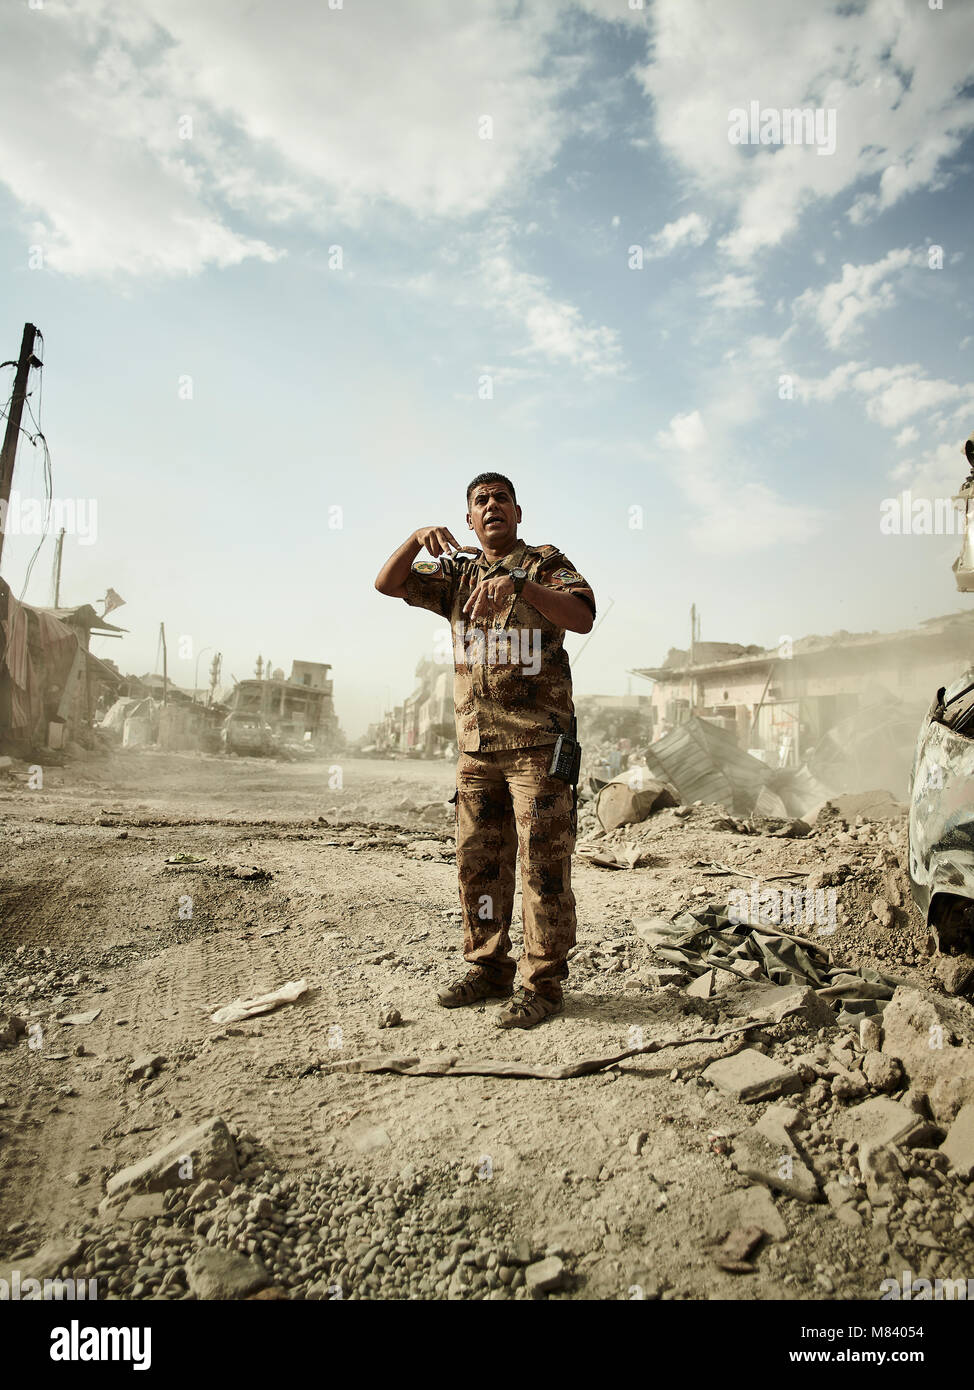 Les principaux du peuple iraquien Ahmad les ordres des forces spéciales d'un bulldozer pour dégager les rues pour les ambulances. La ville de Mossoul dans le nord de l'Iraq est à l'État islamique de militants pour 3 ans depuis juin 2014. En juillet 2017 les forces de la coalition dirigée par l'armée iraquienne a enfin libéré la ville de la part des terroristes. Banque D'Images